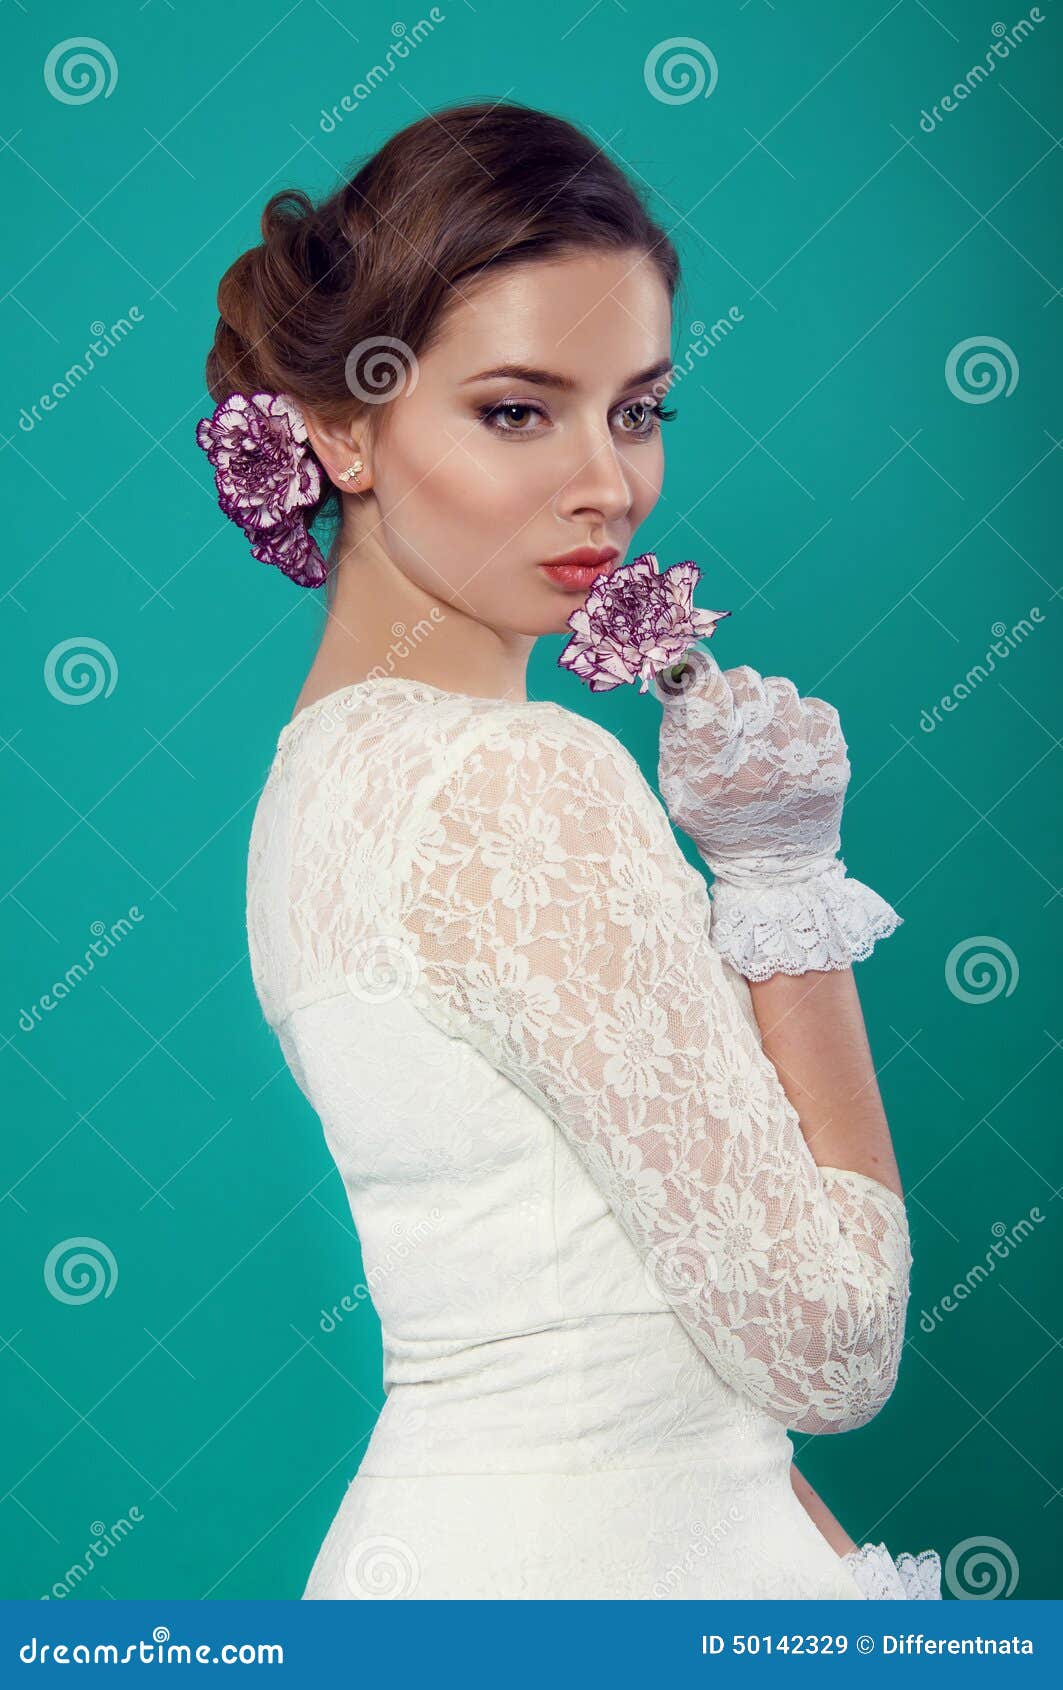 Señora Hermosa En El Vestido Blanco En De La Turquesa Imagen de archivo - Imagen de maquillaje: 50142329